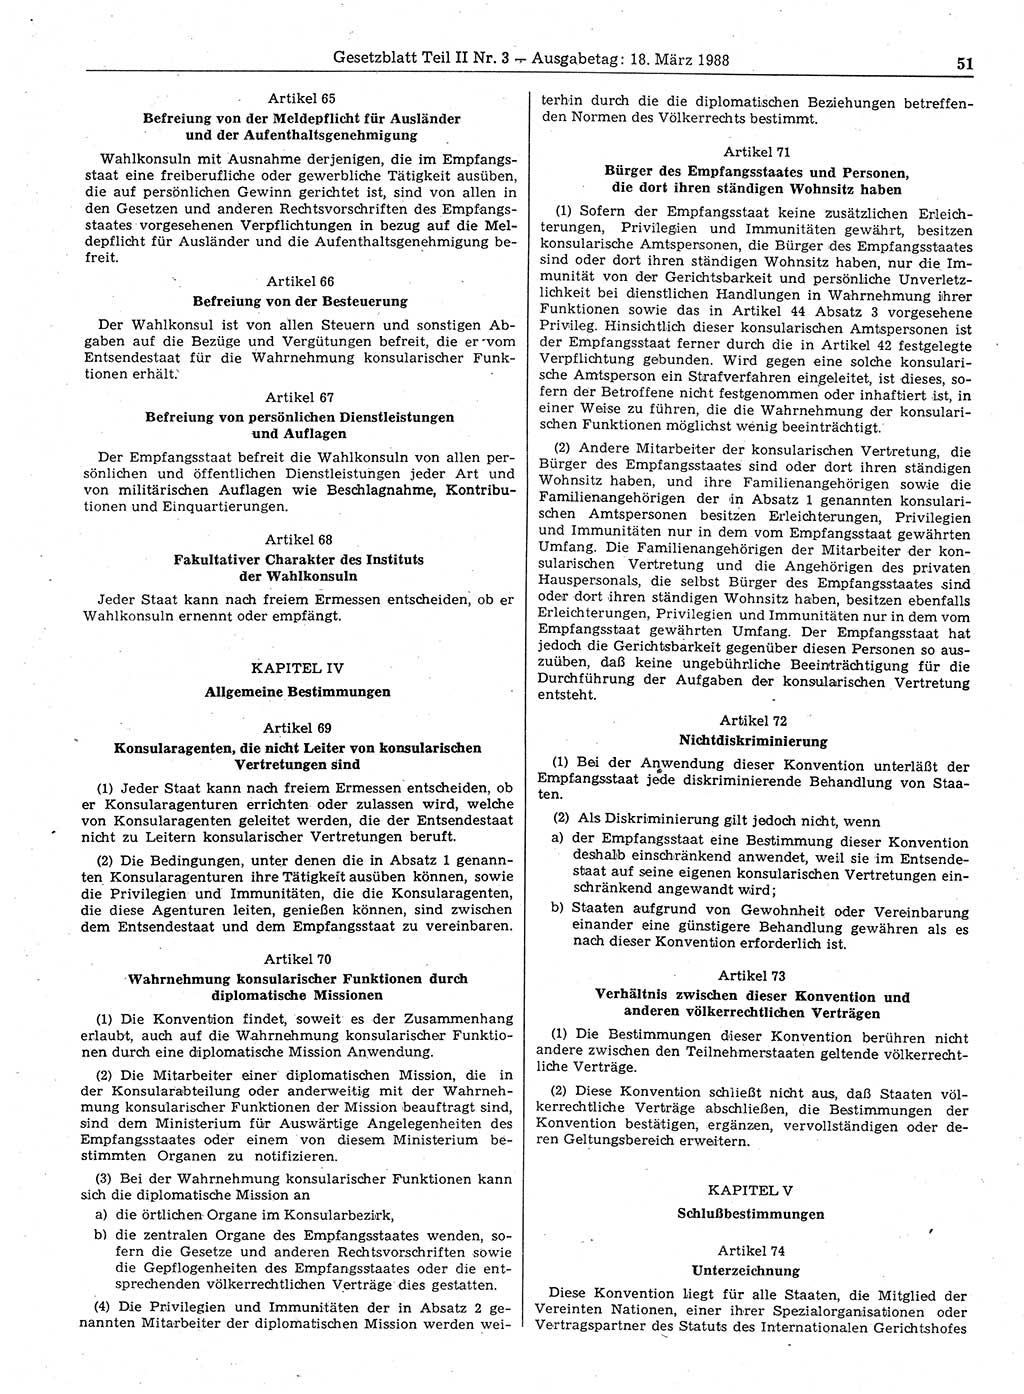 Gesetzblatt (GBl.) der Deutschen Demokratischen Republik (DDR) Teil ⅠⅠ 1988, Seite 51 (GBl. DDR ⅠⅠ 1988, S. 51)